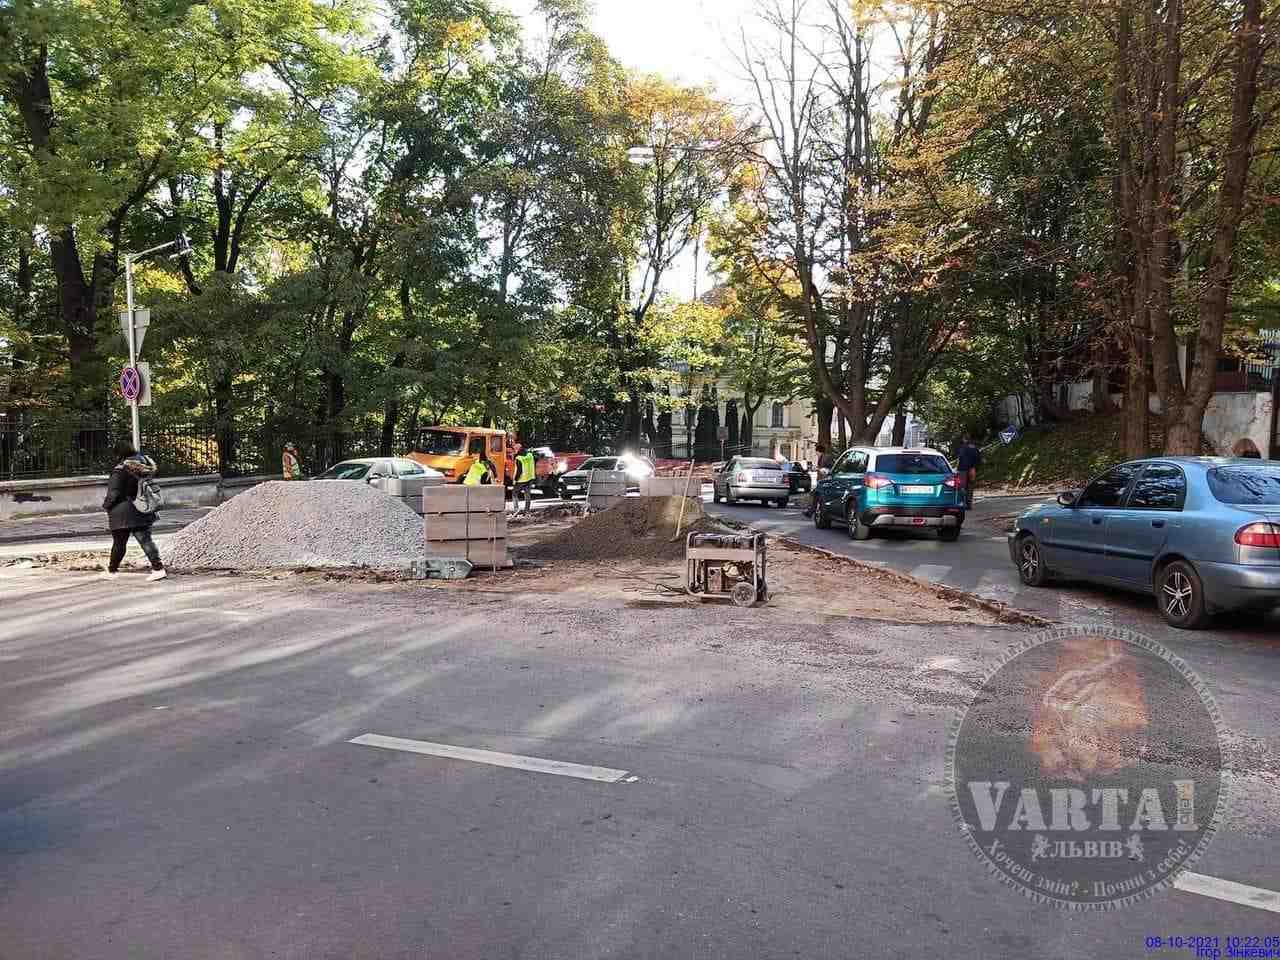 Зміна руху, знаків і новий острівець безпеки: ранковий сюрприз для львівських водіїв (ФОТО)